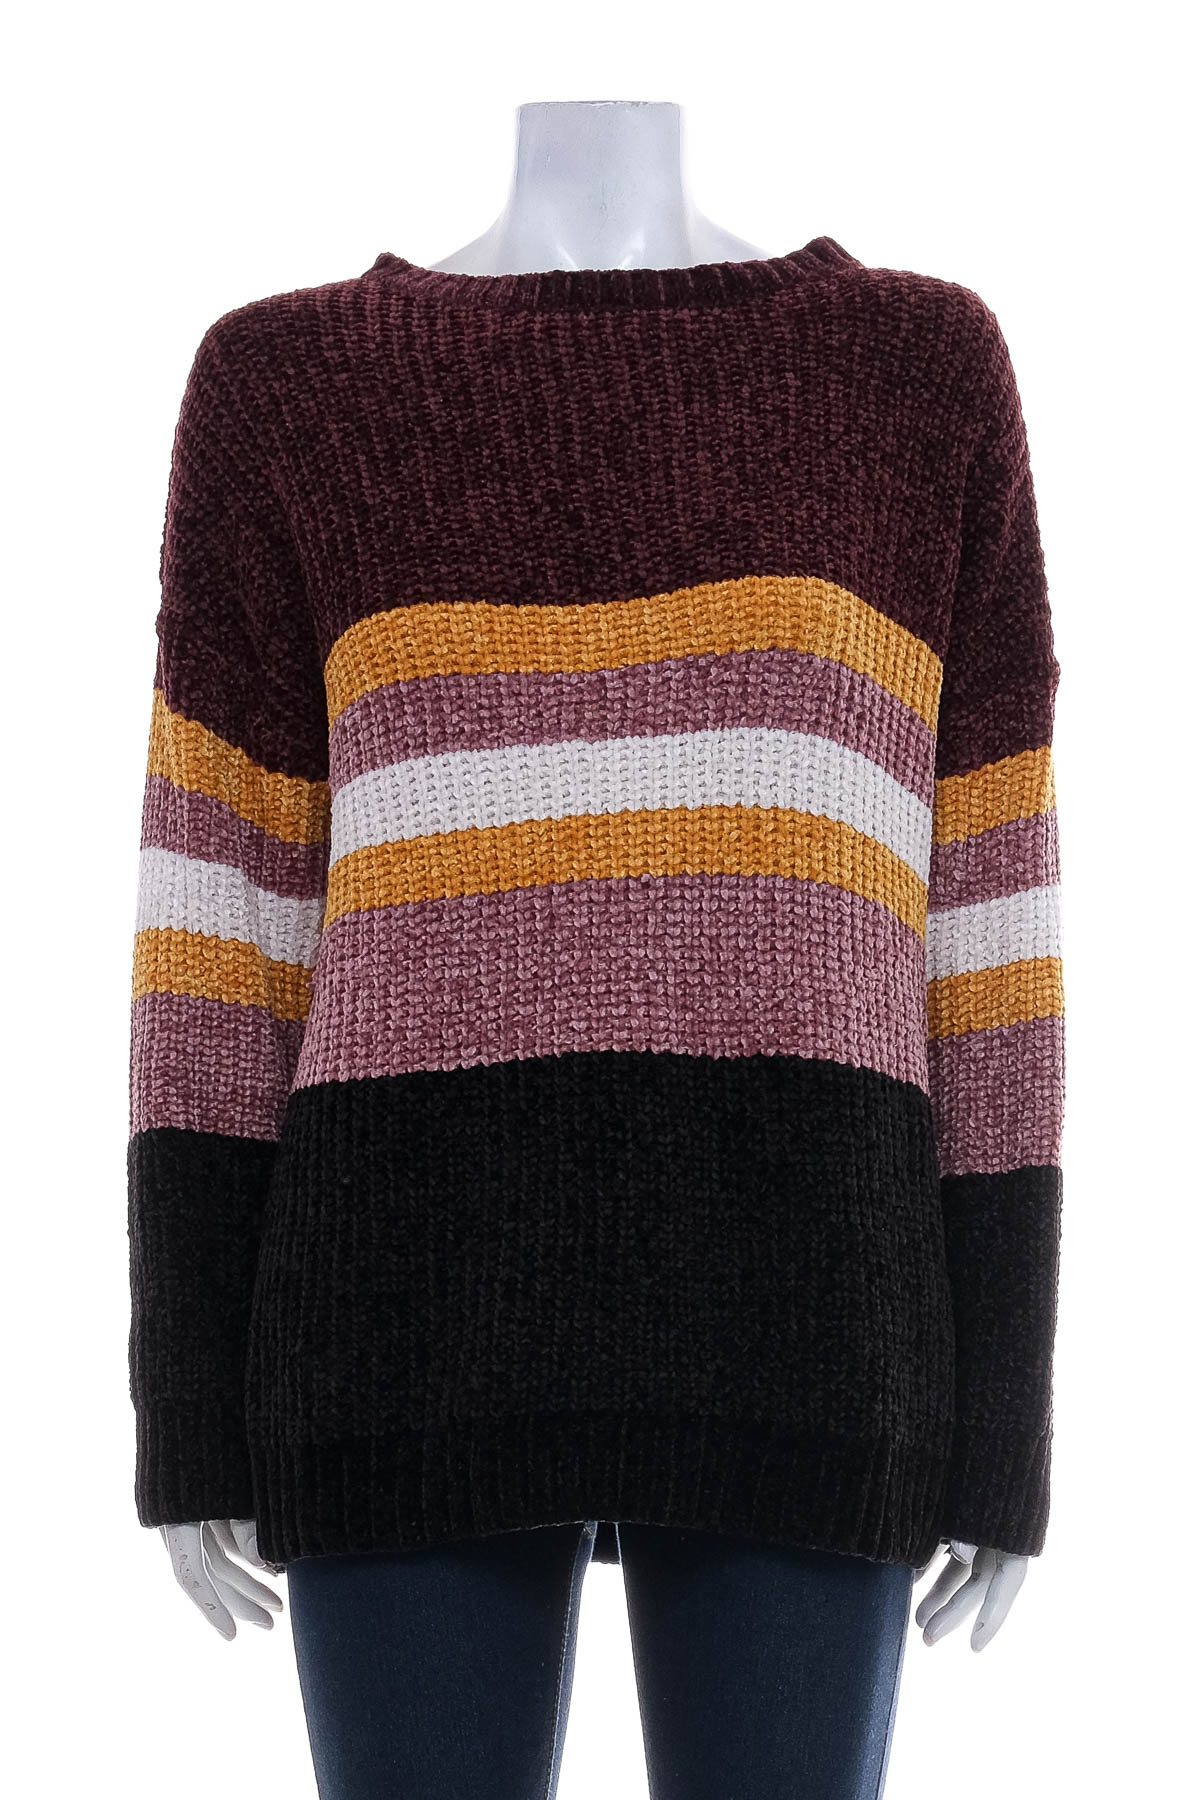 Women's sweater - Esmara - 0